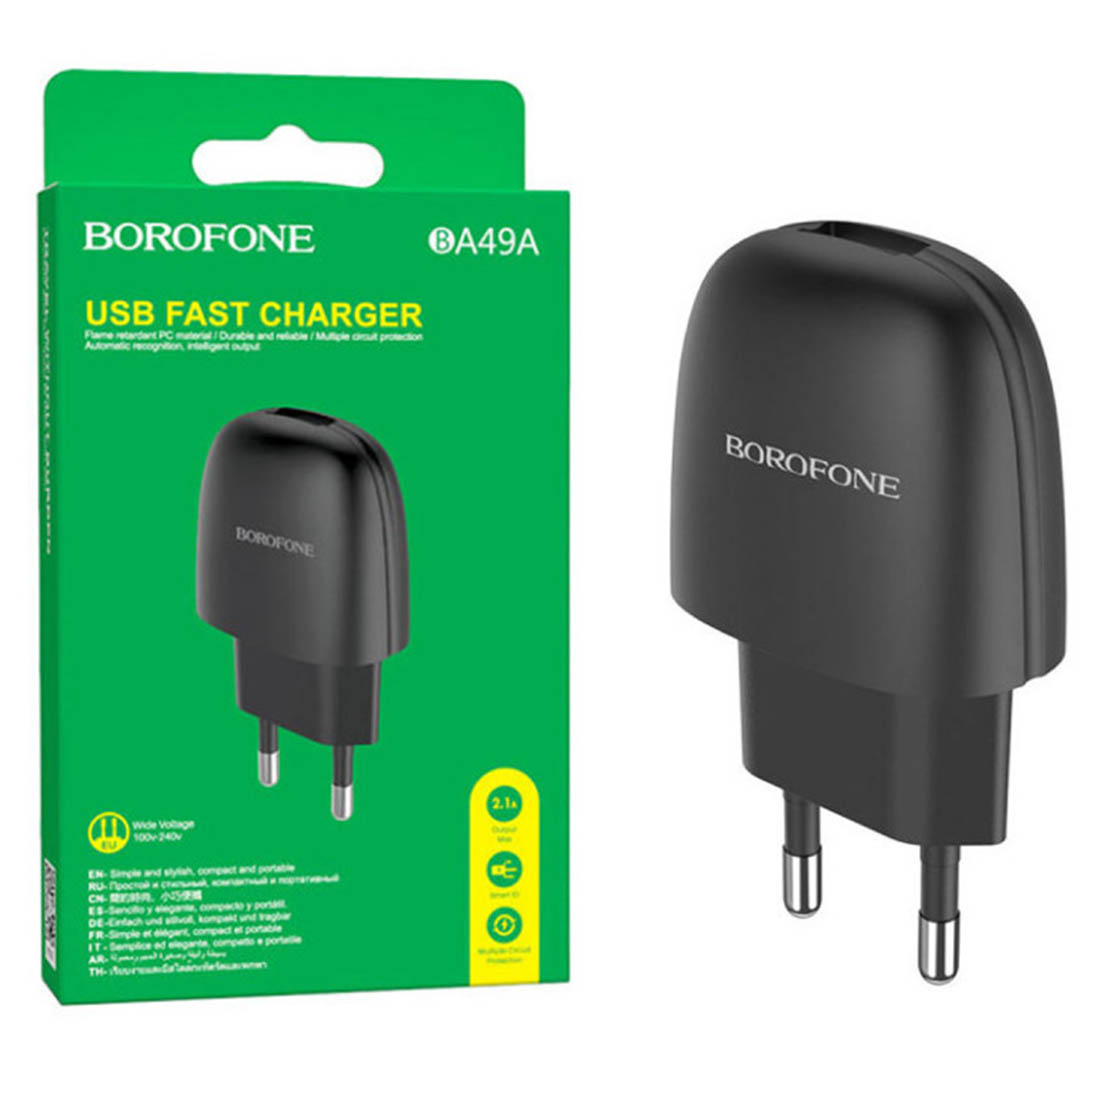 СЗУ (Сетевое зарядное устройство) BOROFONE BA49A, 2.1A, 1 USB, цвет черный